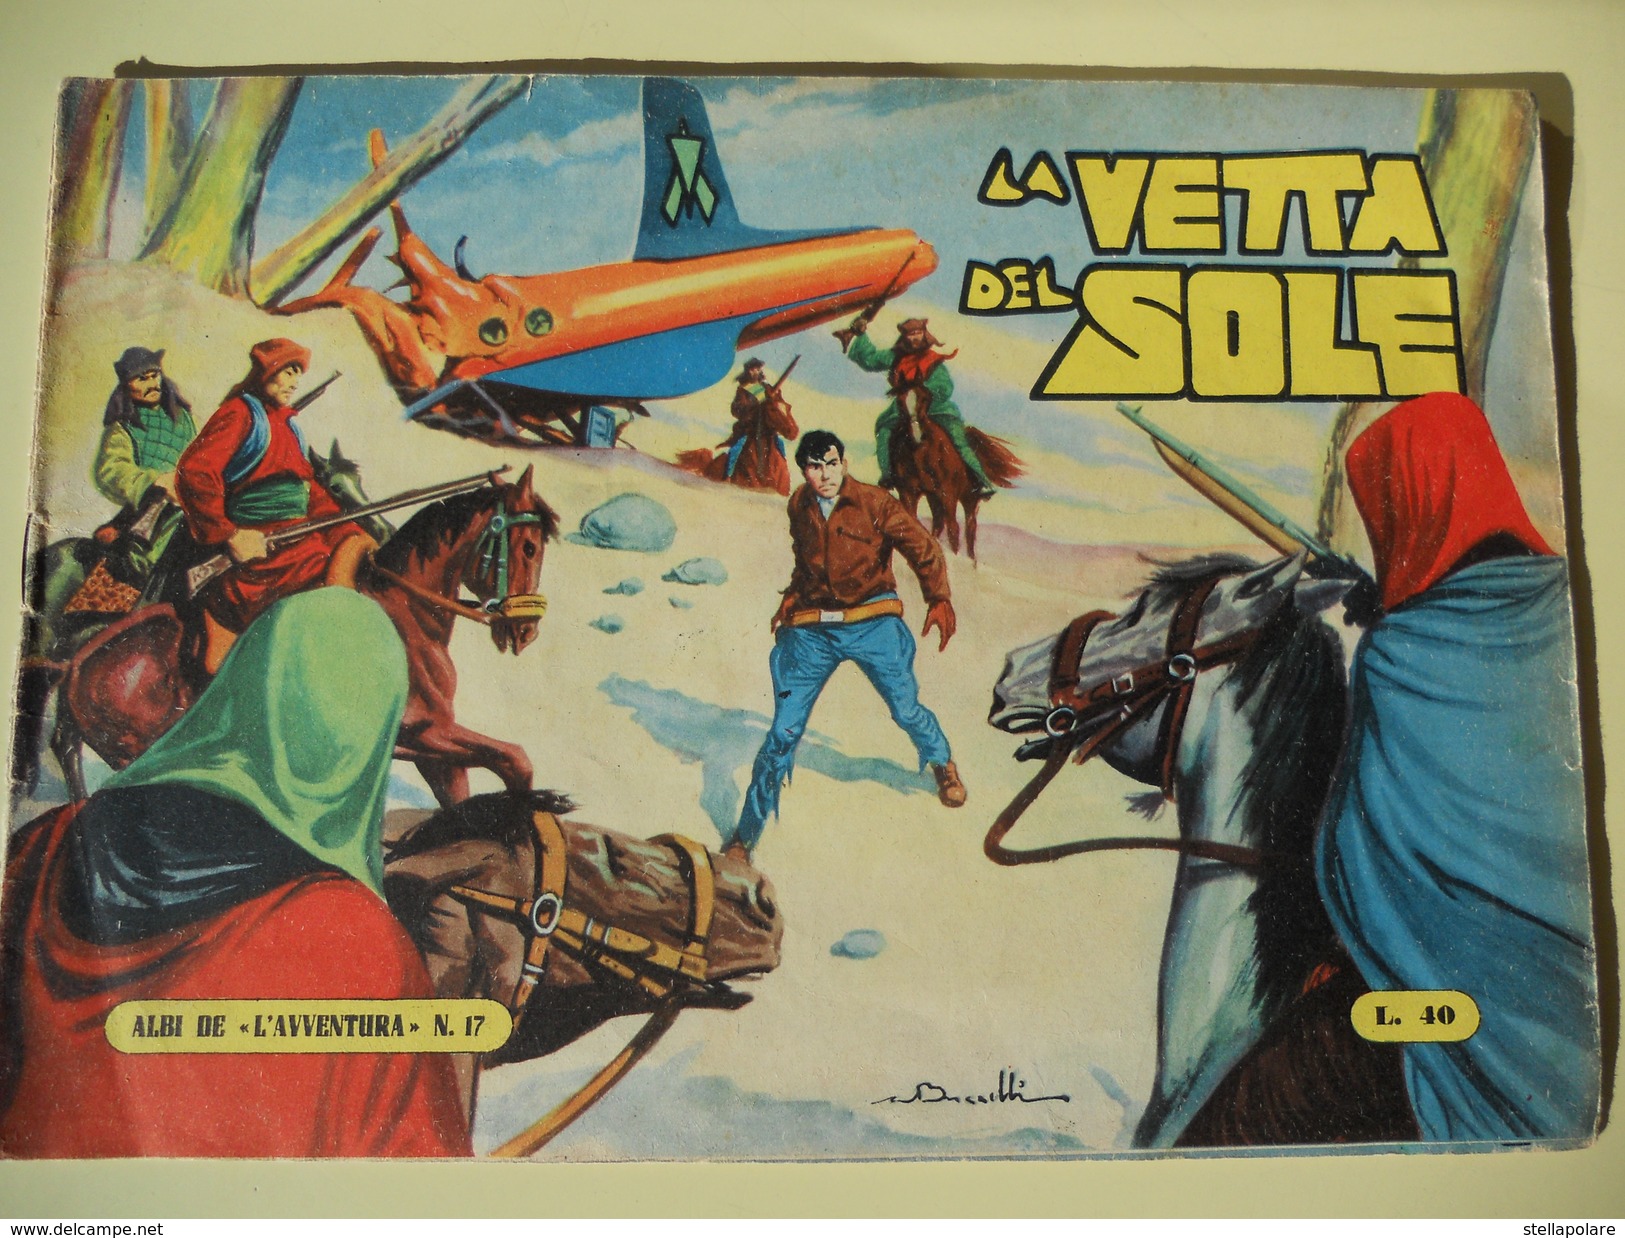 CAPRIOTTI - ALBI DE L'AVVENTURA - RAFF VENTURA N. 17 - LA VETTA DEL SOLE -1955 - Comics 1930-50